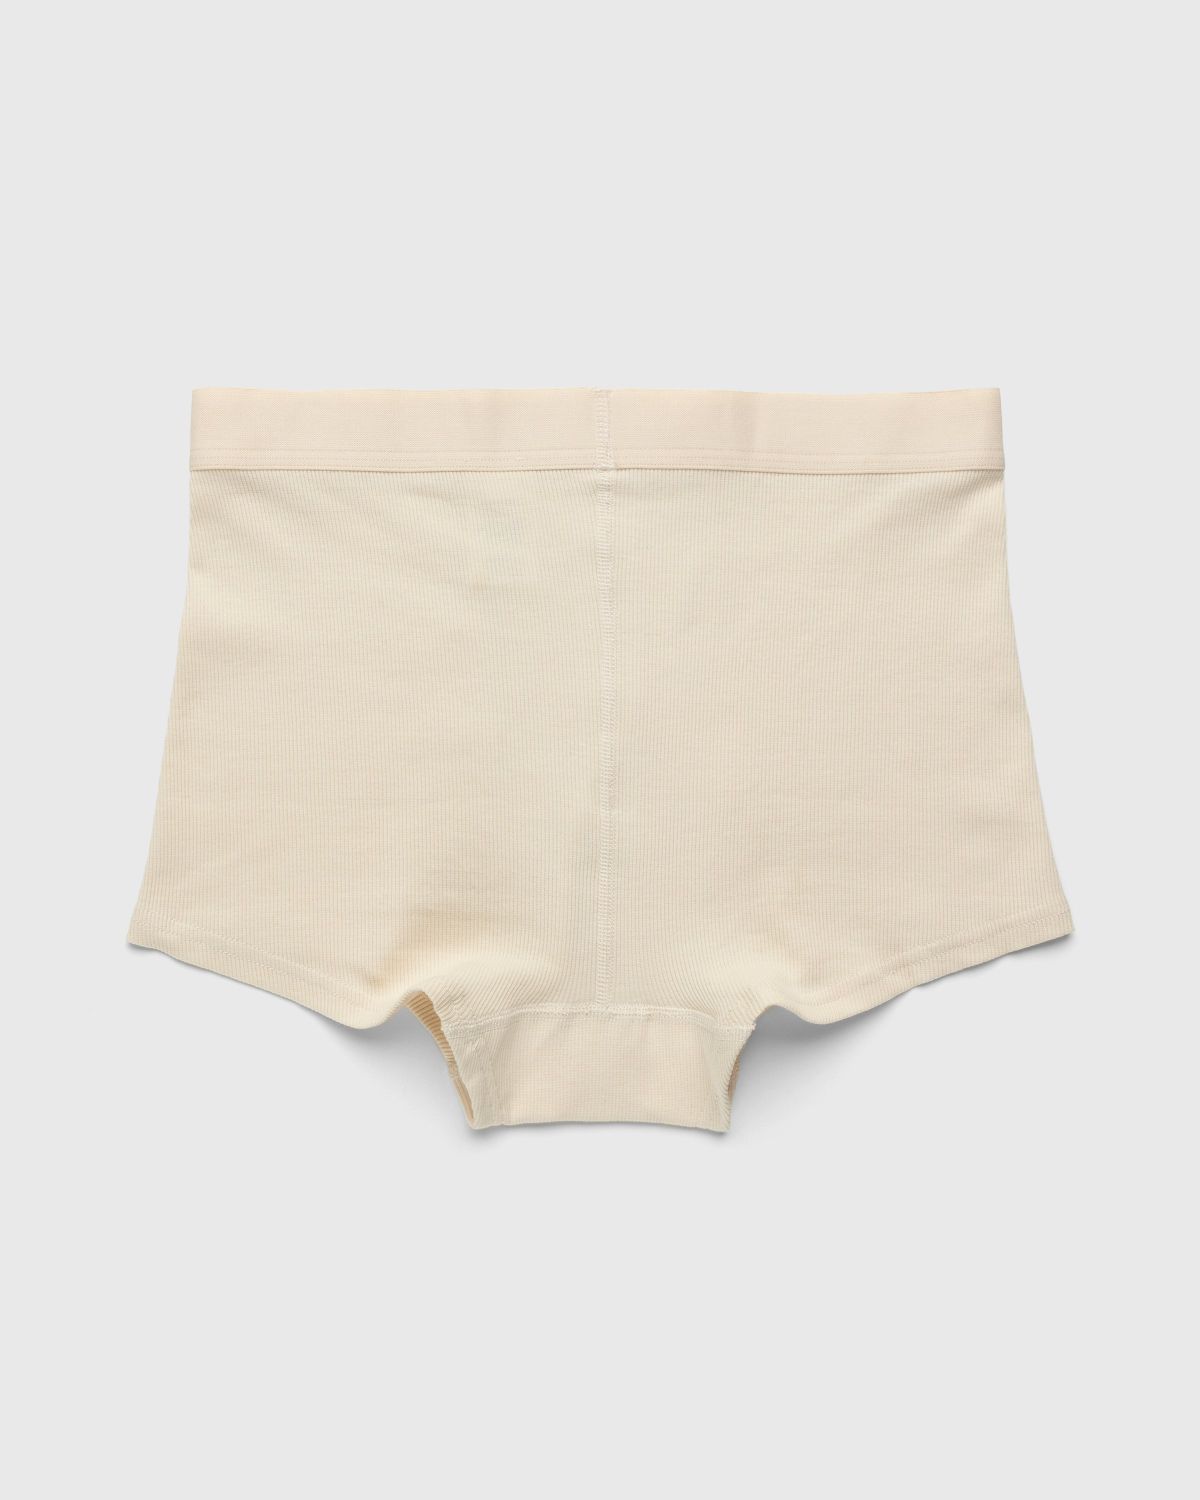 Marine Serre – Organic Cotton Ribbed Boxers Beige - Underwear - Beige - Image 6